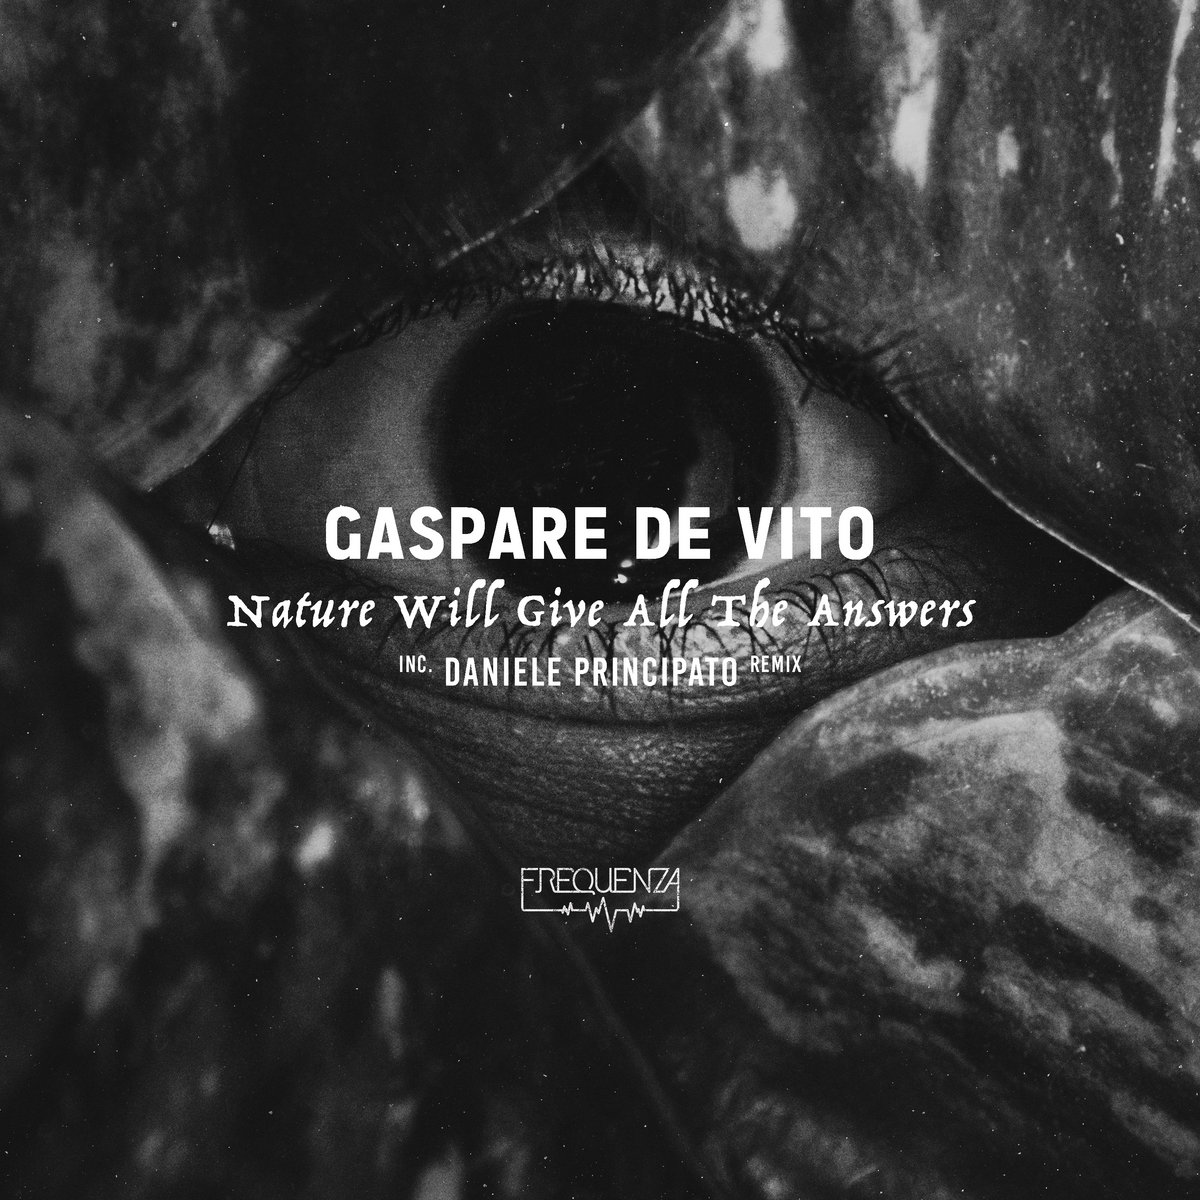 Gaspare De Vito - Nature will give all the answers